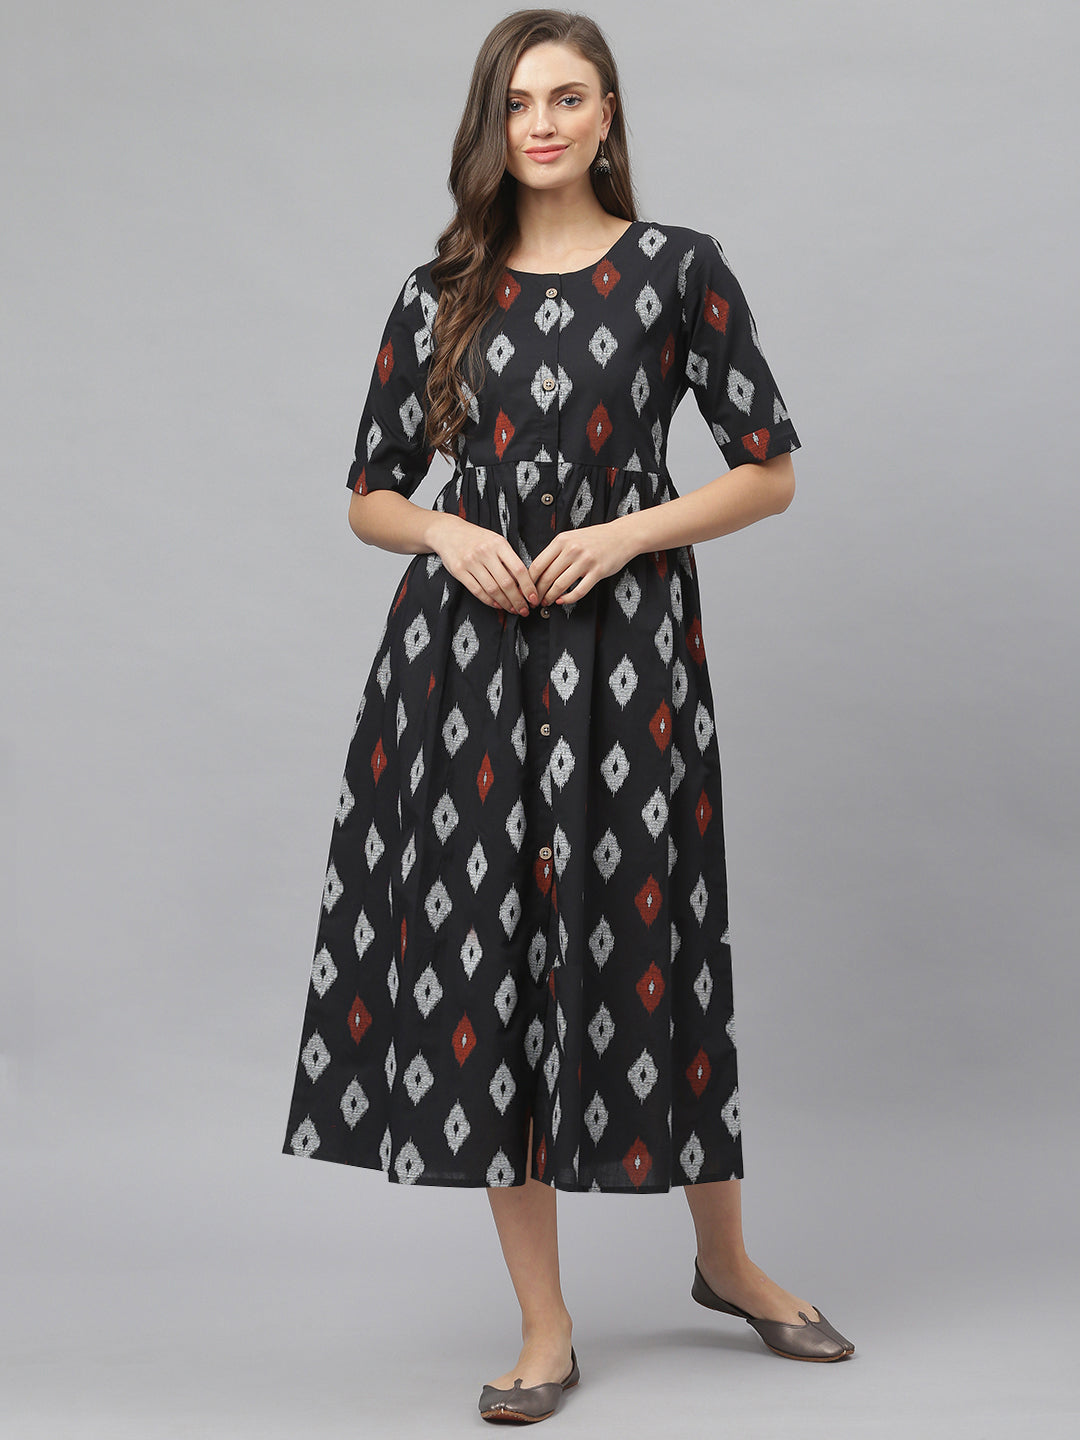 Women's Ikat Print Cotton Midi Flared Dress